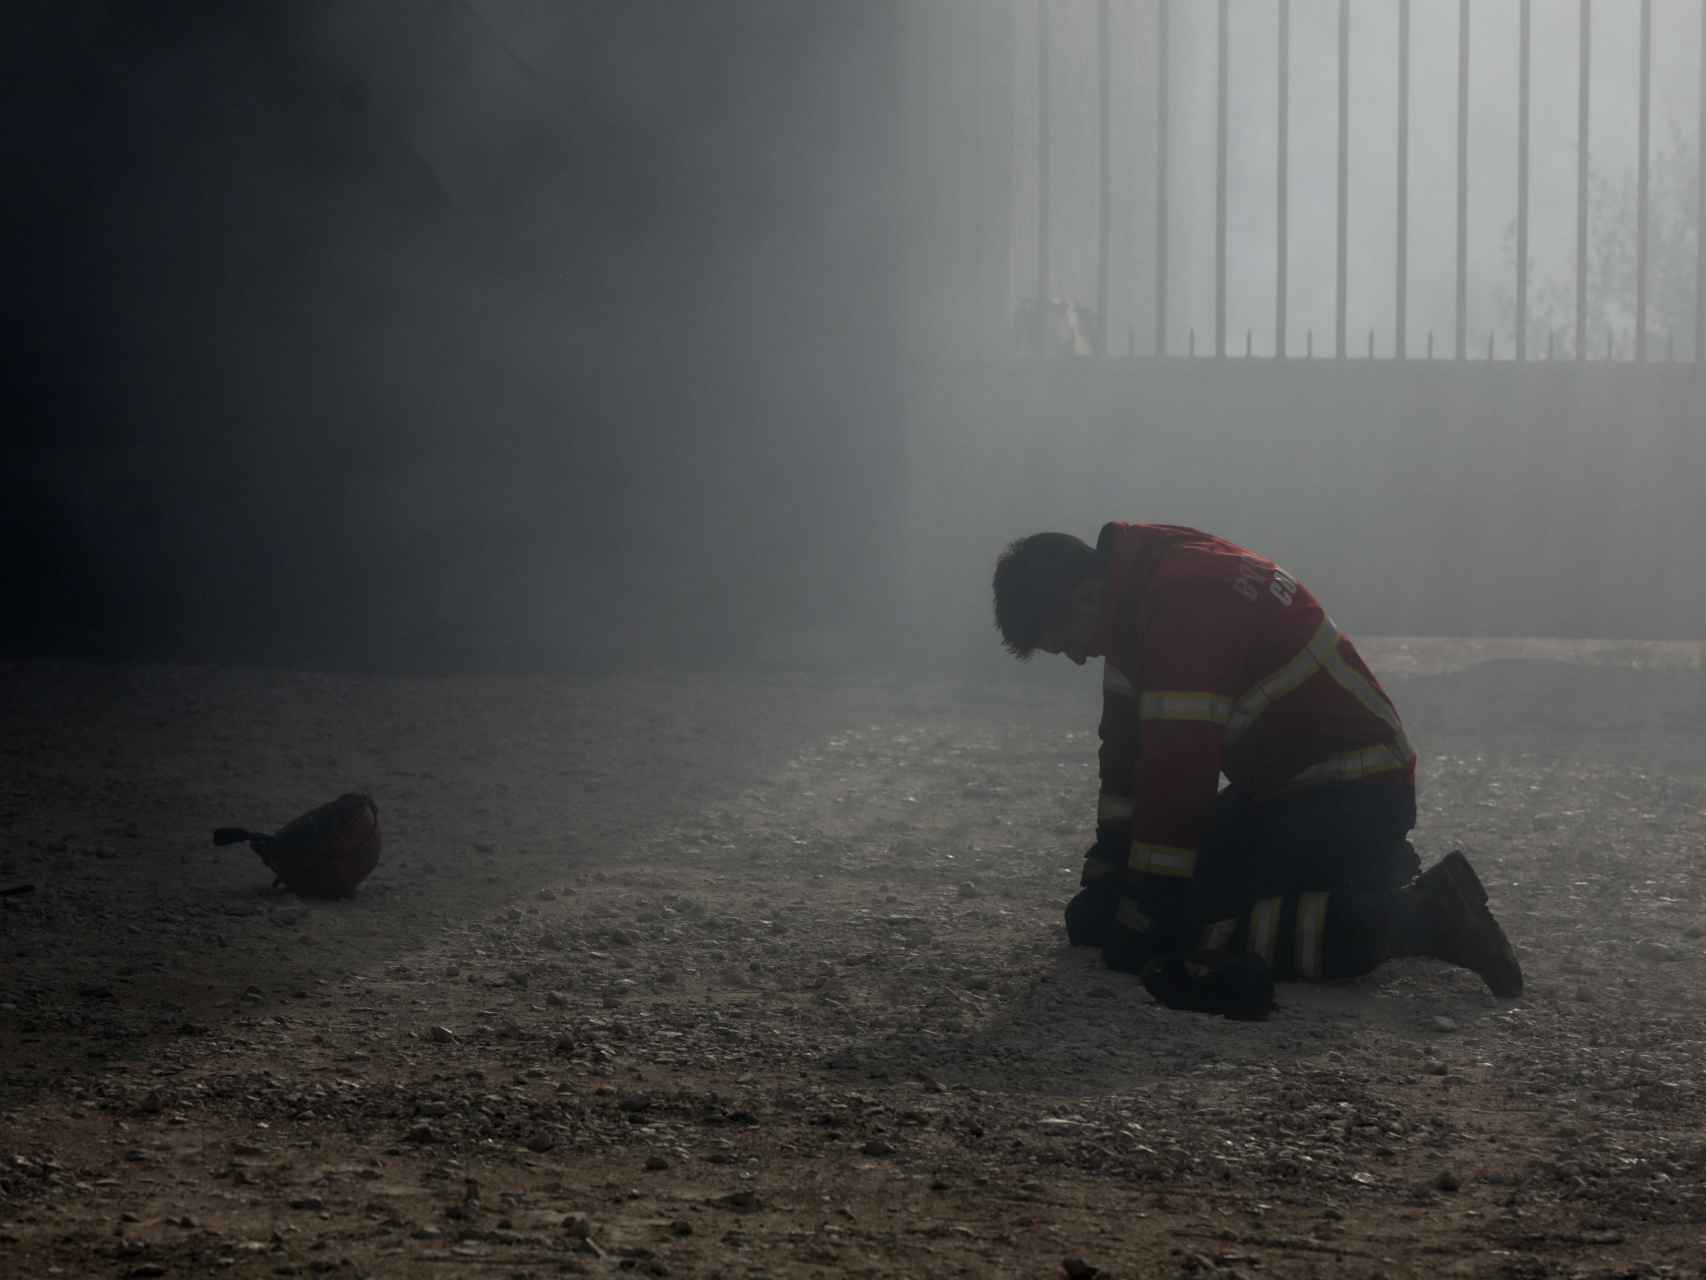 Un bombero arrodillado tras el combate al incendio en Portugal.